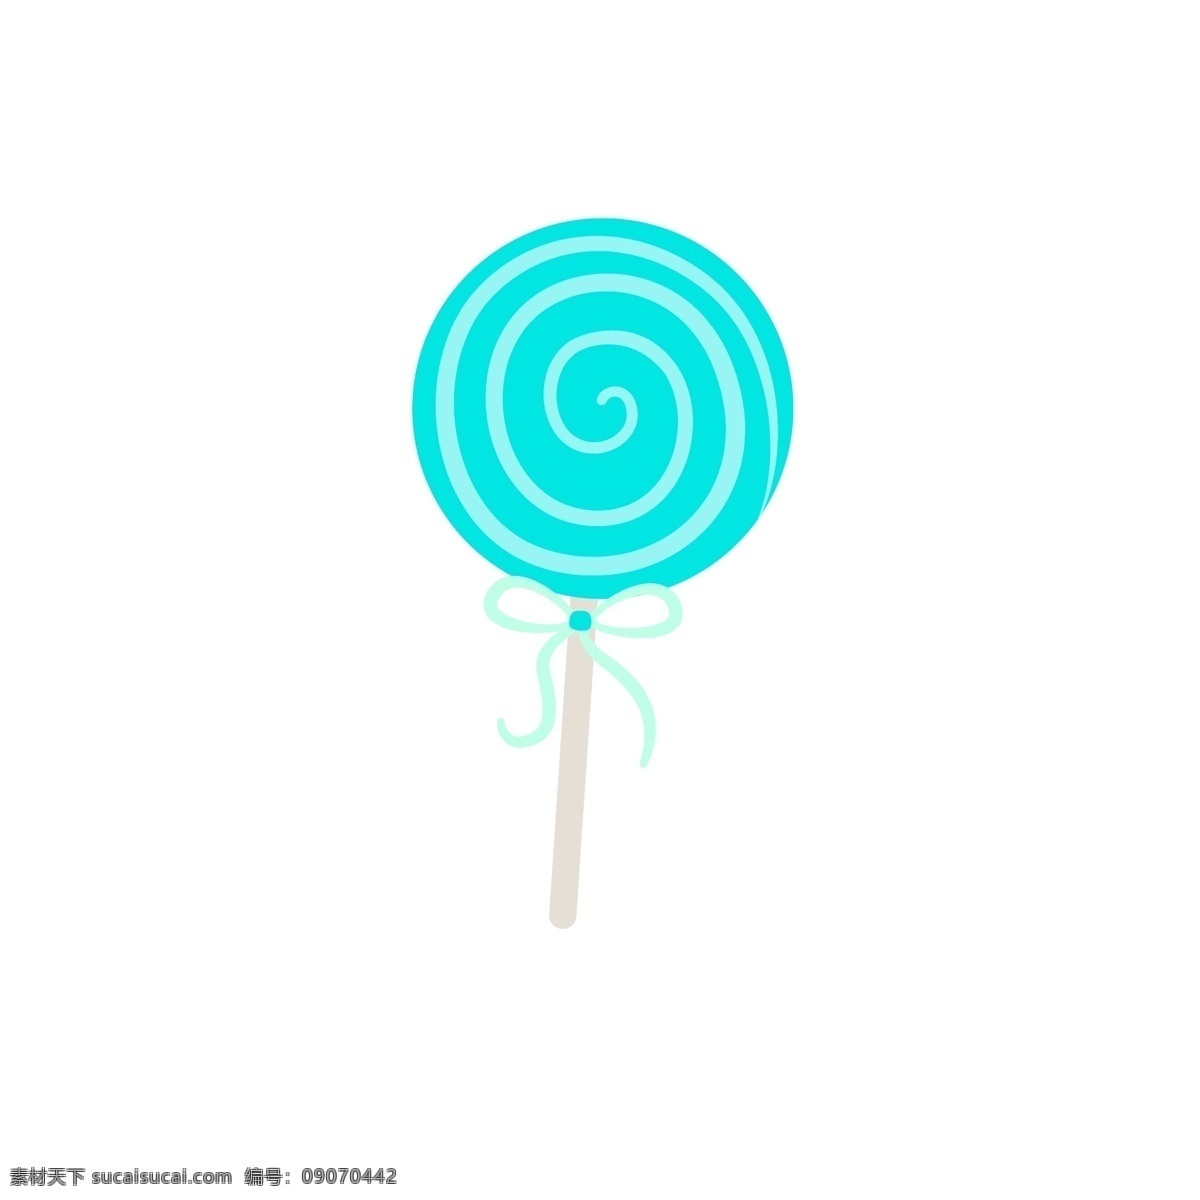 棒 糖 螺旋 纹 矢量 元素 卡通手绘 创意简约 小清新风 糖果 棒棒糖 蓝色 可爱 绘图装饰